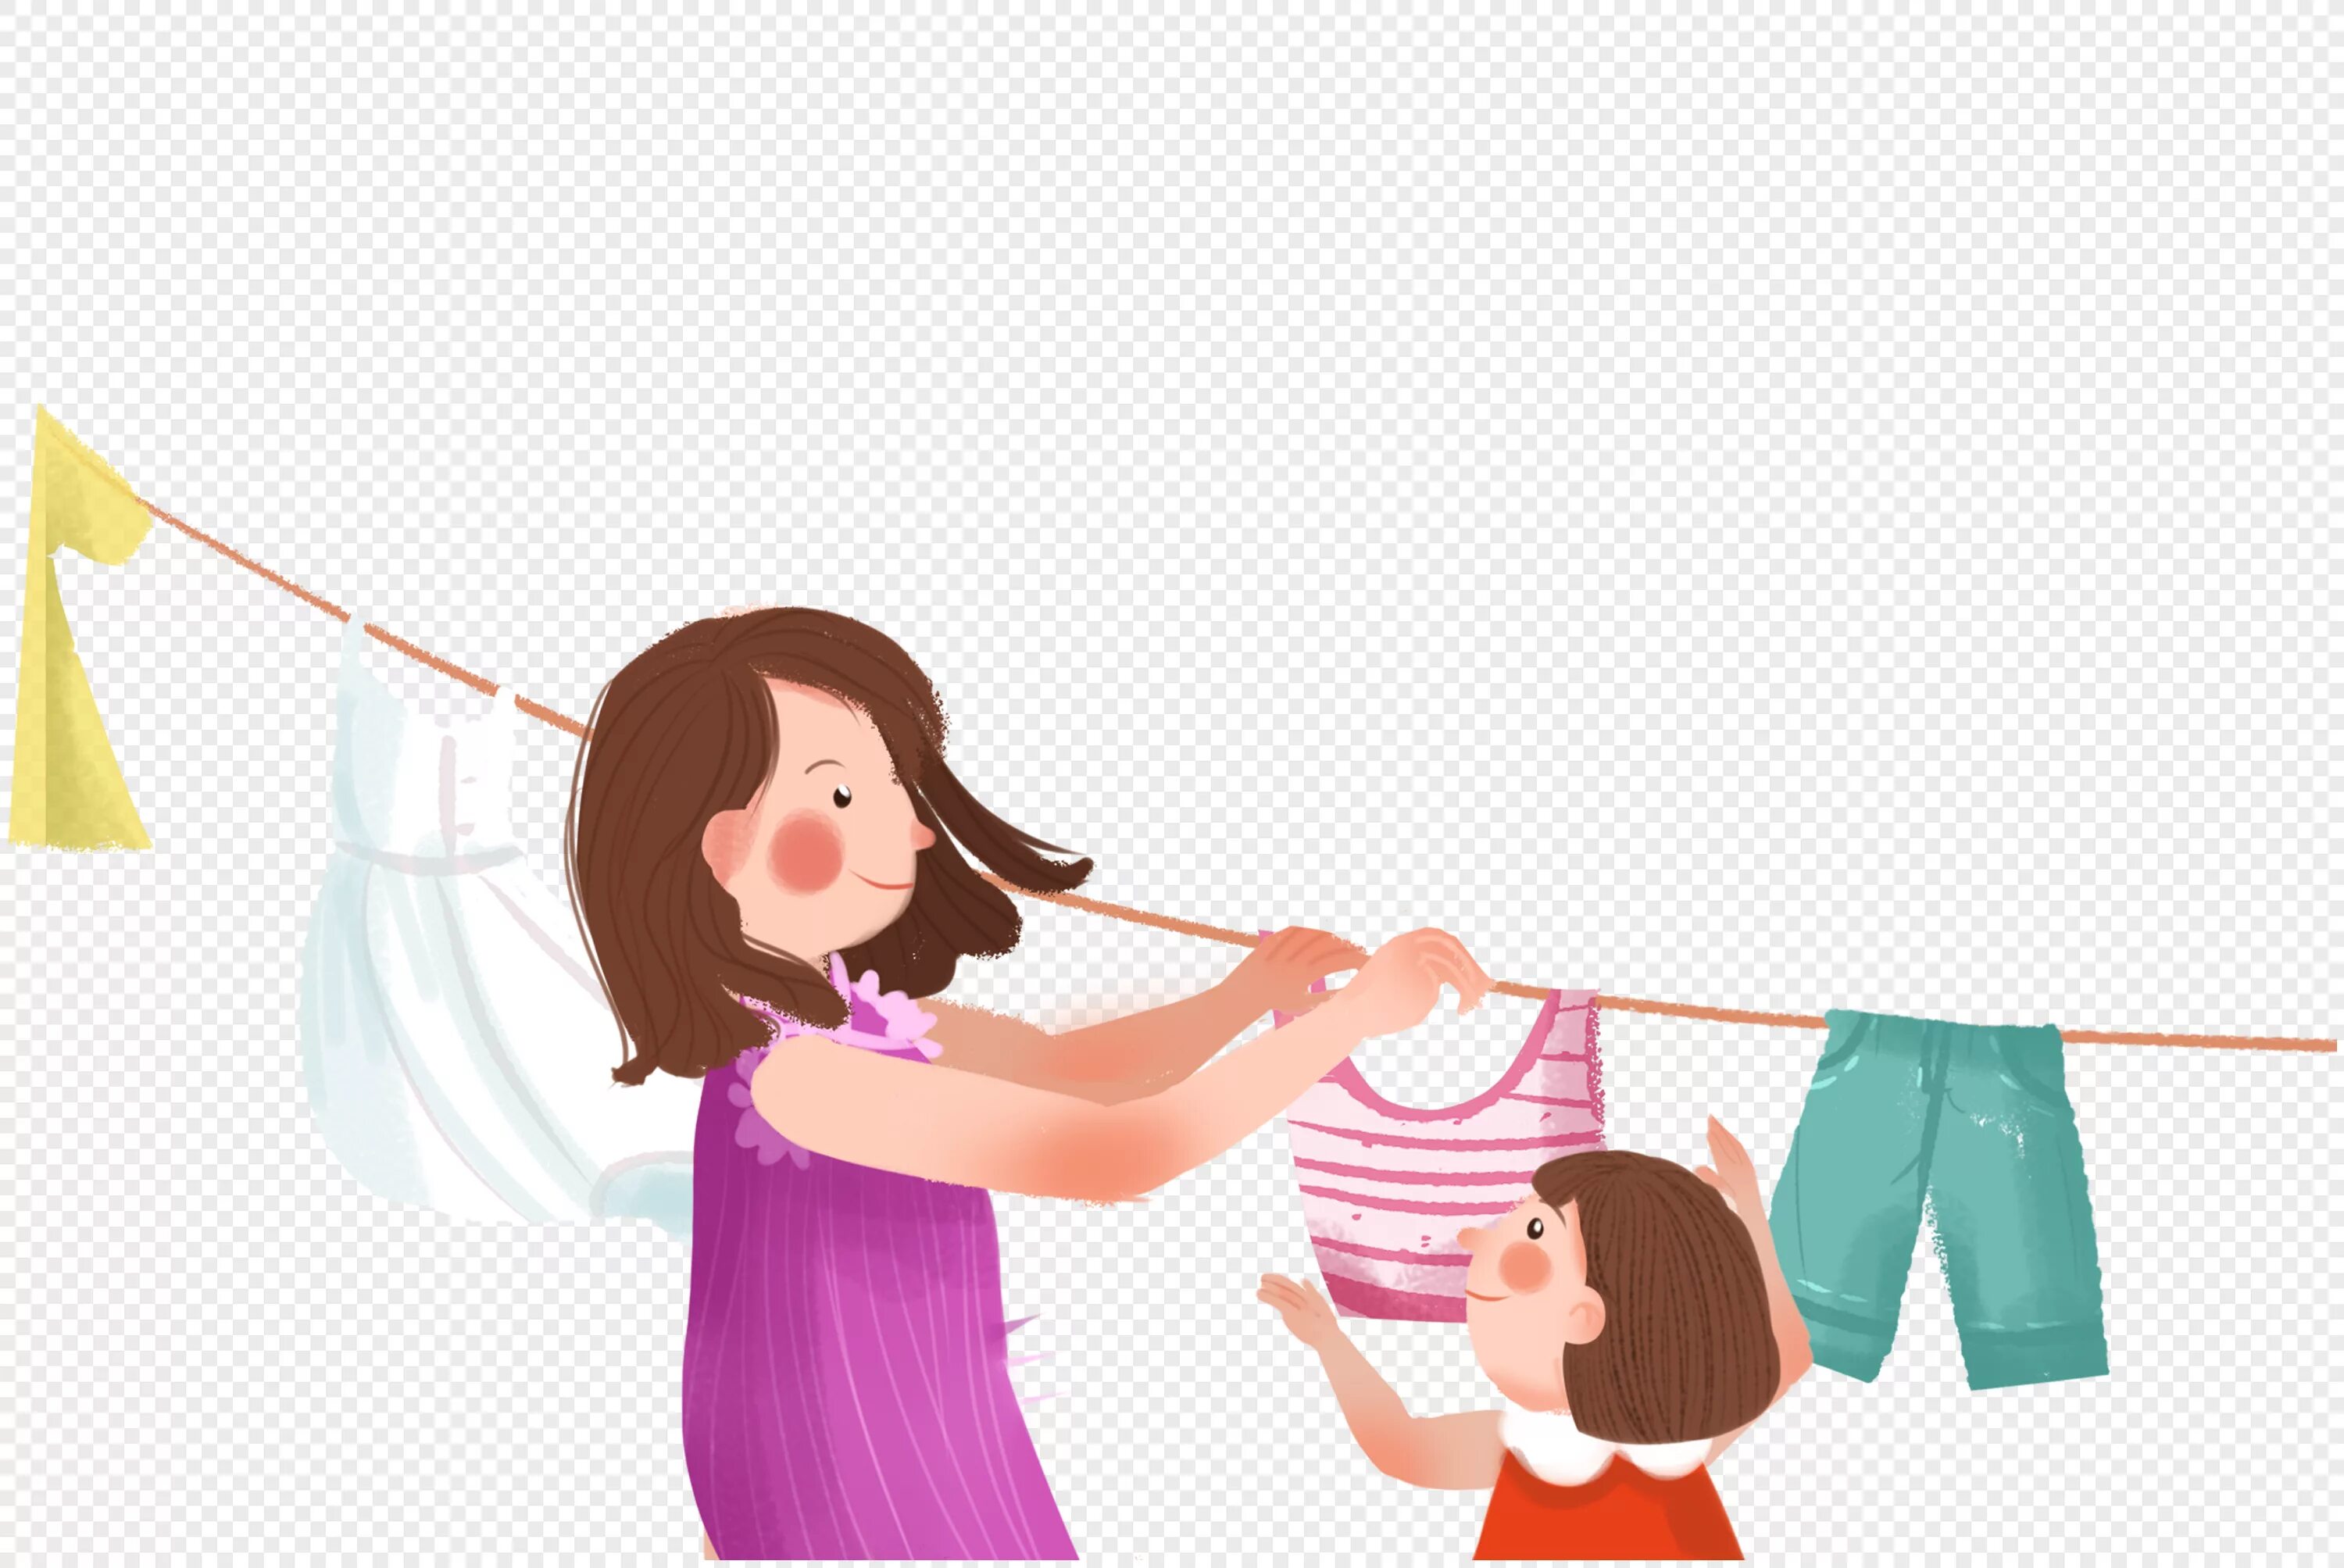 Танец помогаем маме. Мама вешает белье. Фон помогаю маме. Иллюстрация помогаю маме. Дети развешивают белье на прозрачном фоне.